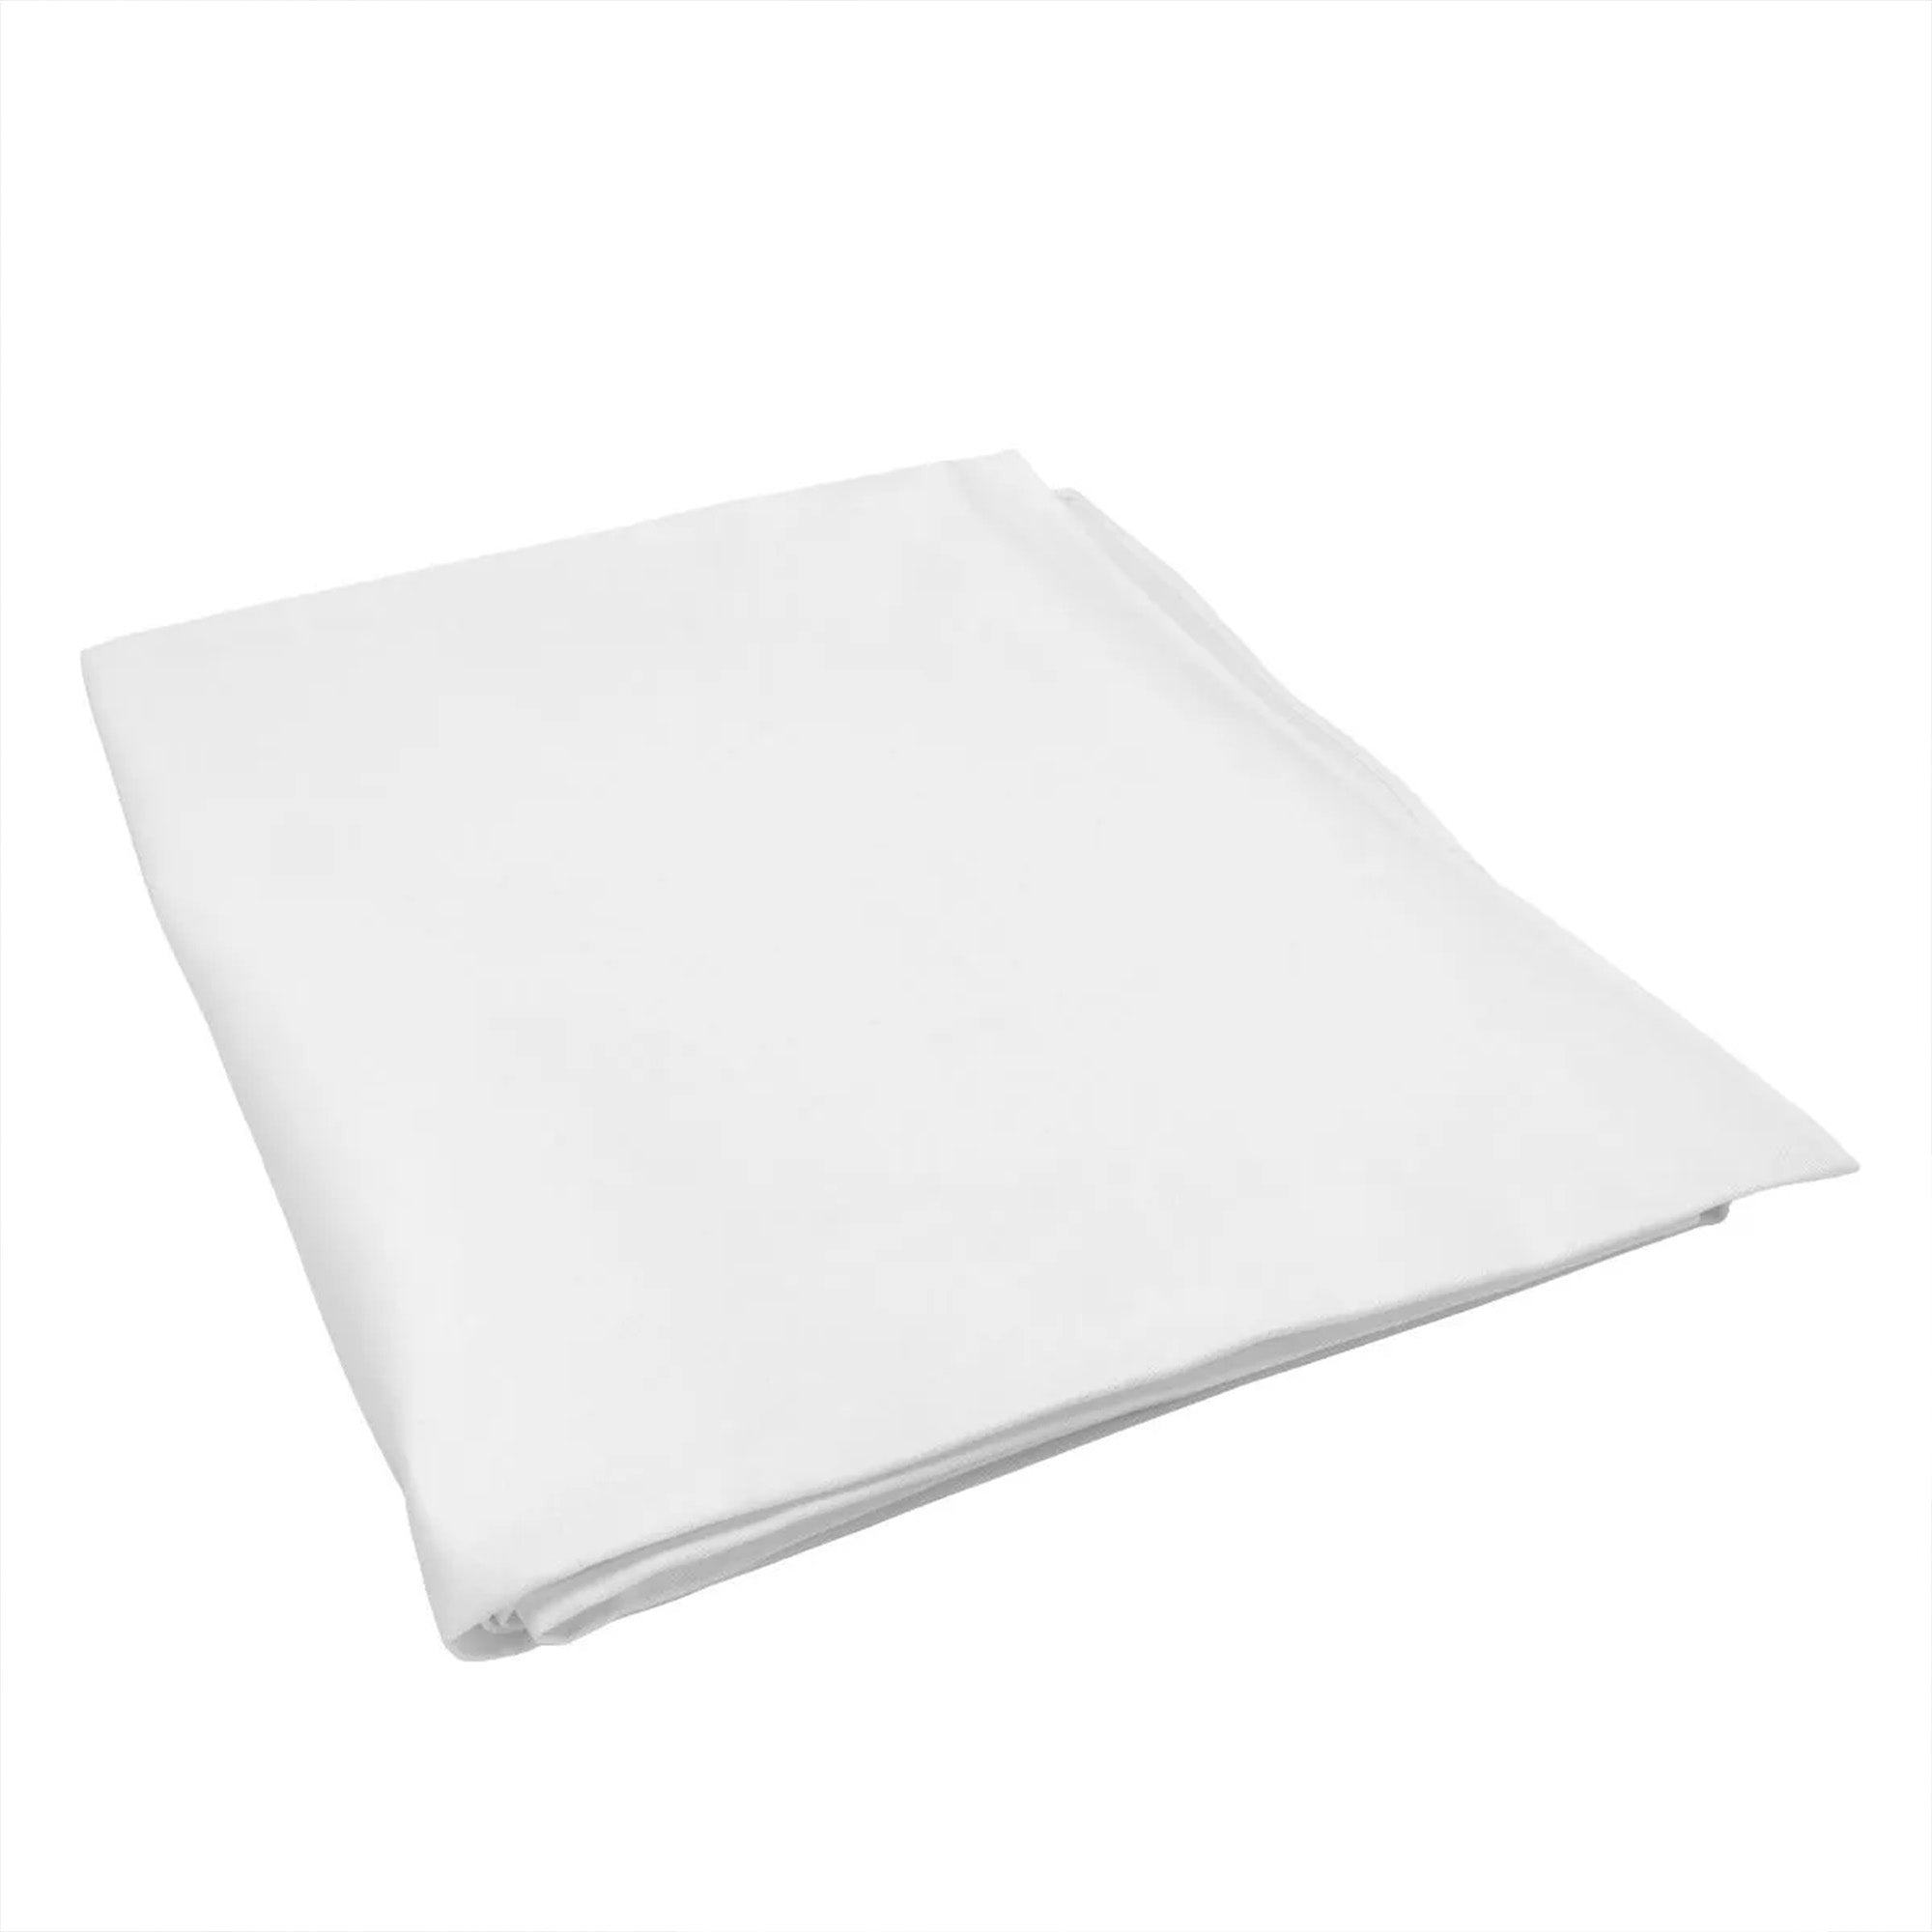 (30 Stykker) Damast Bordduk Porto - glatt sateng - 130 x 130 cm - Hvit